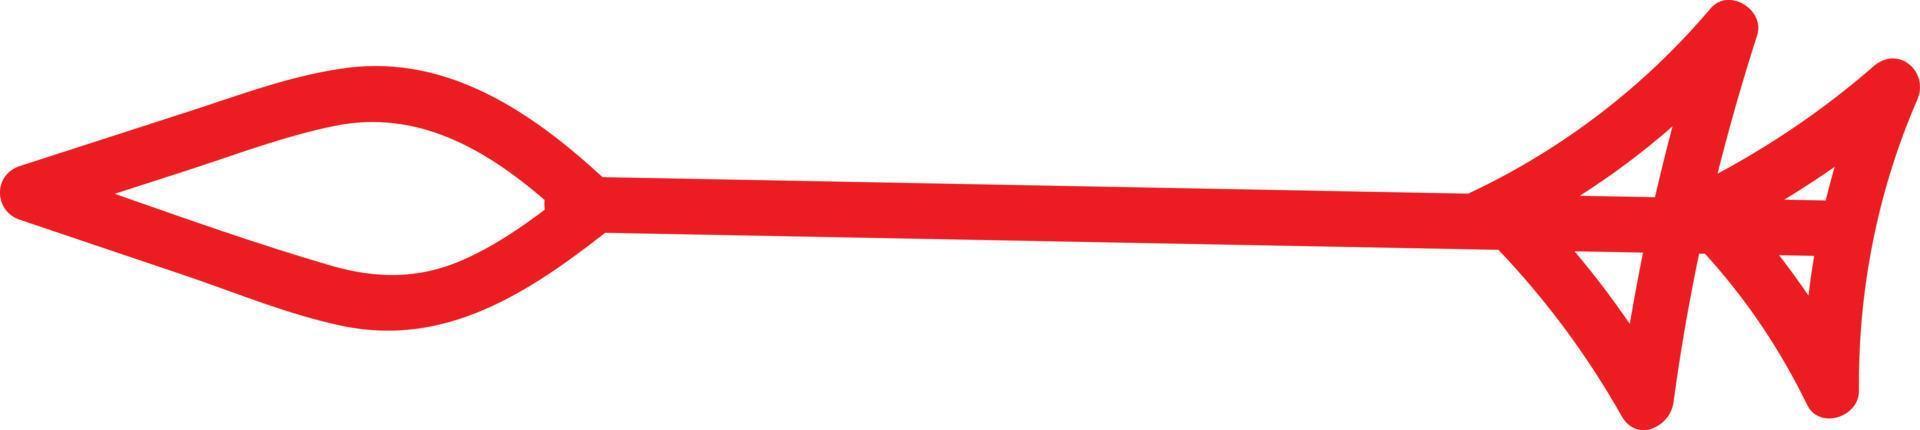 flecha roja con una lanza como puntero, ilustración, vector sobre fondo blanco.